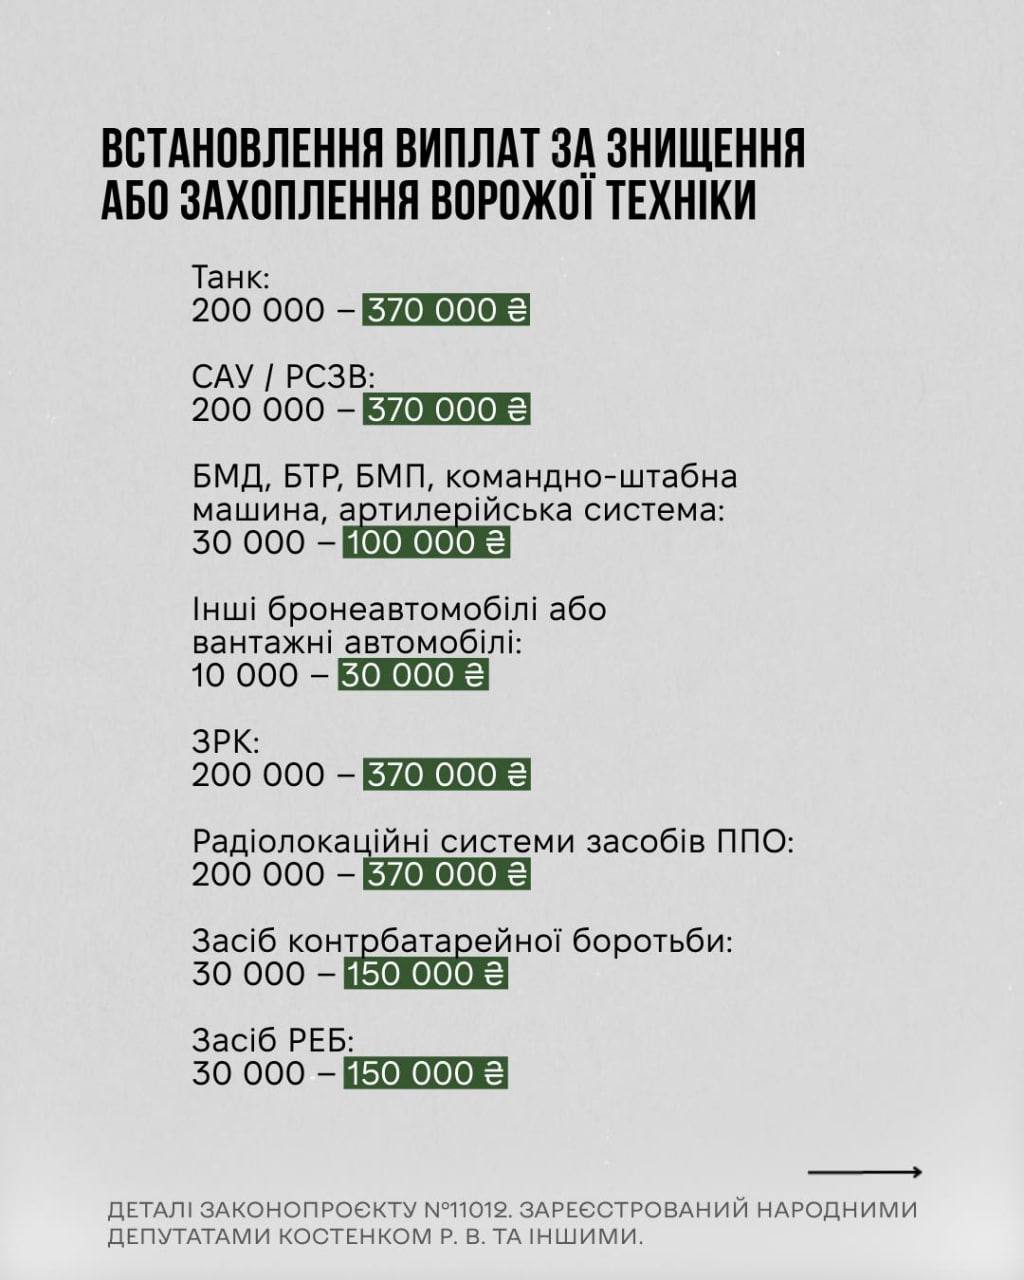 Снимок законопроекта на rada.gov.ua (титульная страница)